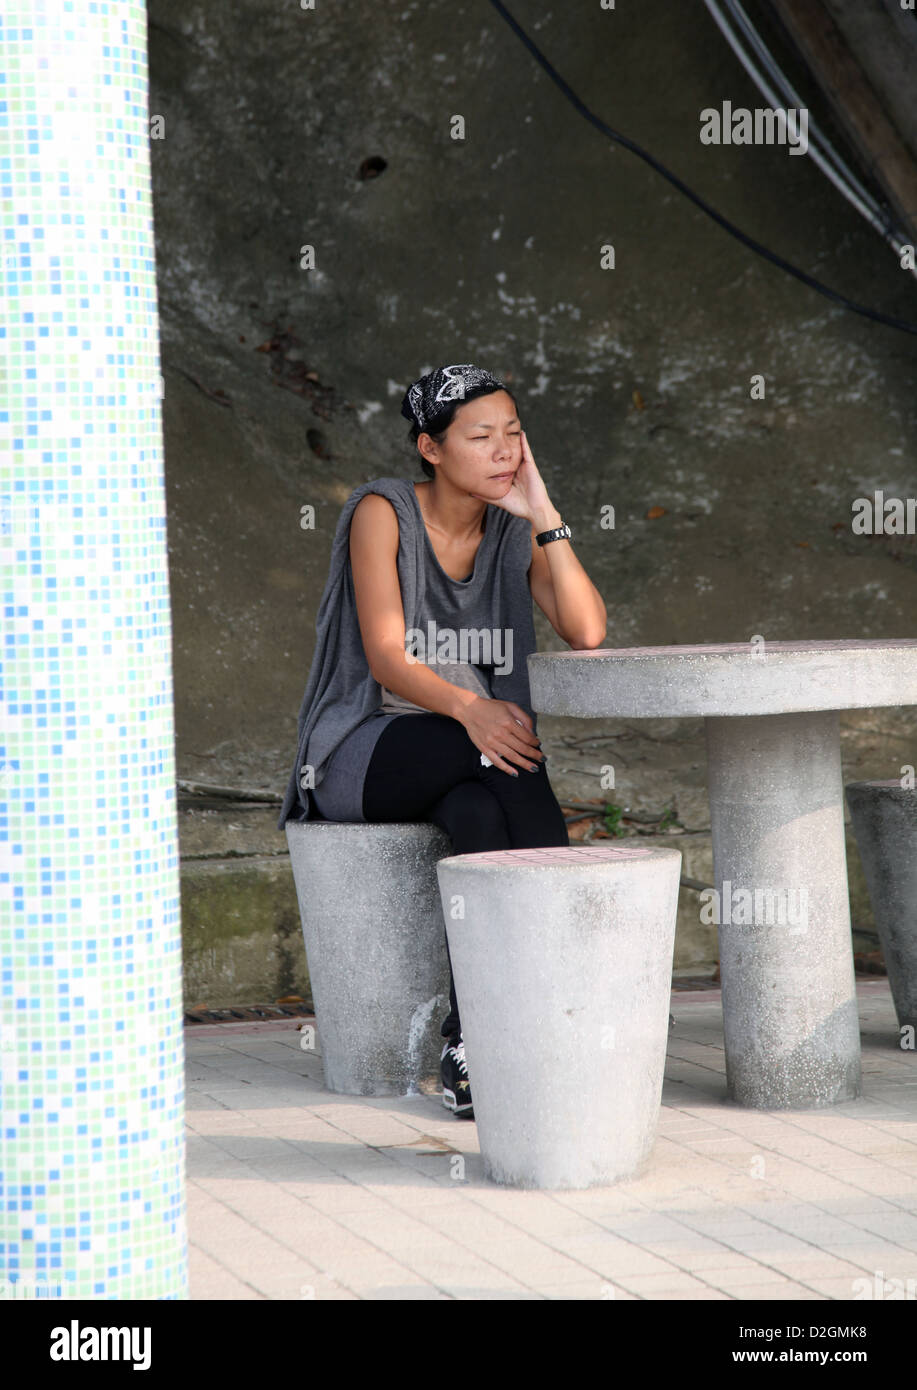 Es ist ein Foto einer chinesischen Frau, die an einem Tisch sitzt. Sie schlafen oder ruhen, haben ein Nickerchen oder denken, träumen warten Stockfoto